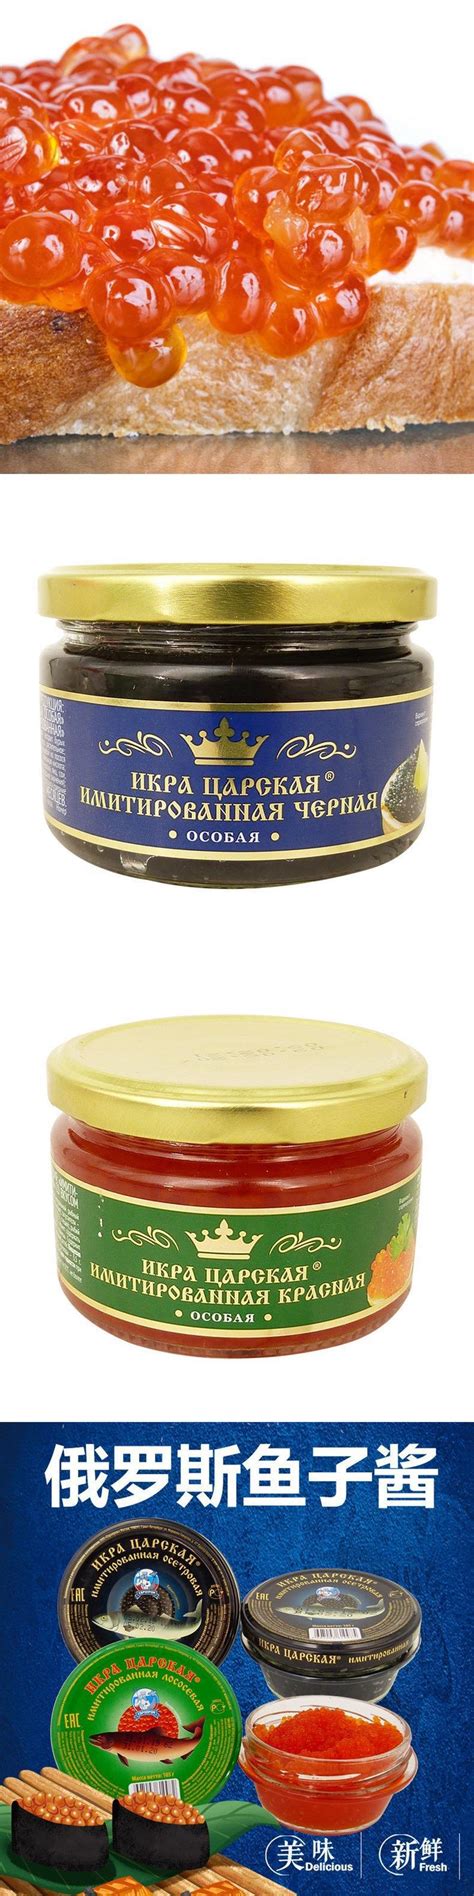 俄罗斯原装进口鱼子酱 大马哈鱼籽酱红鱼子寿司料理130g鱼籽批发-阿里巴巴